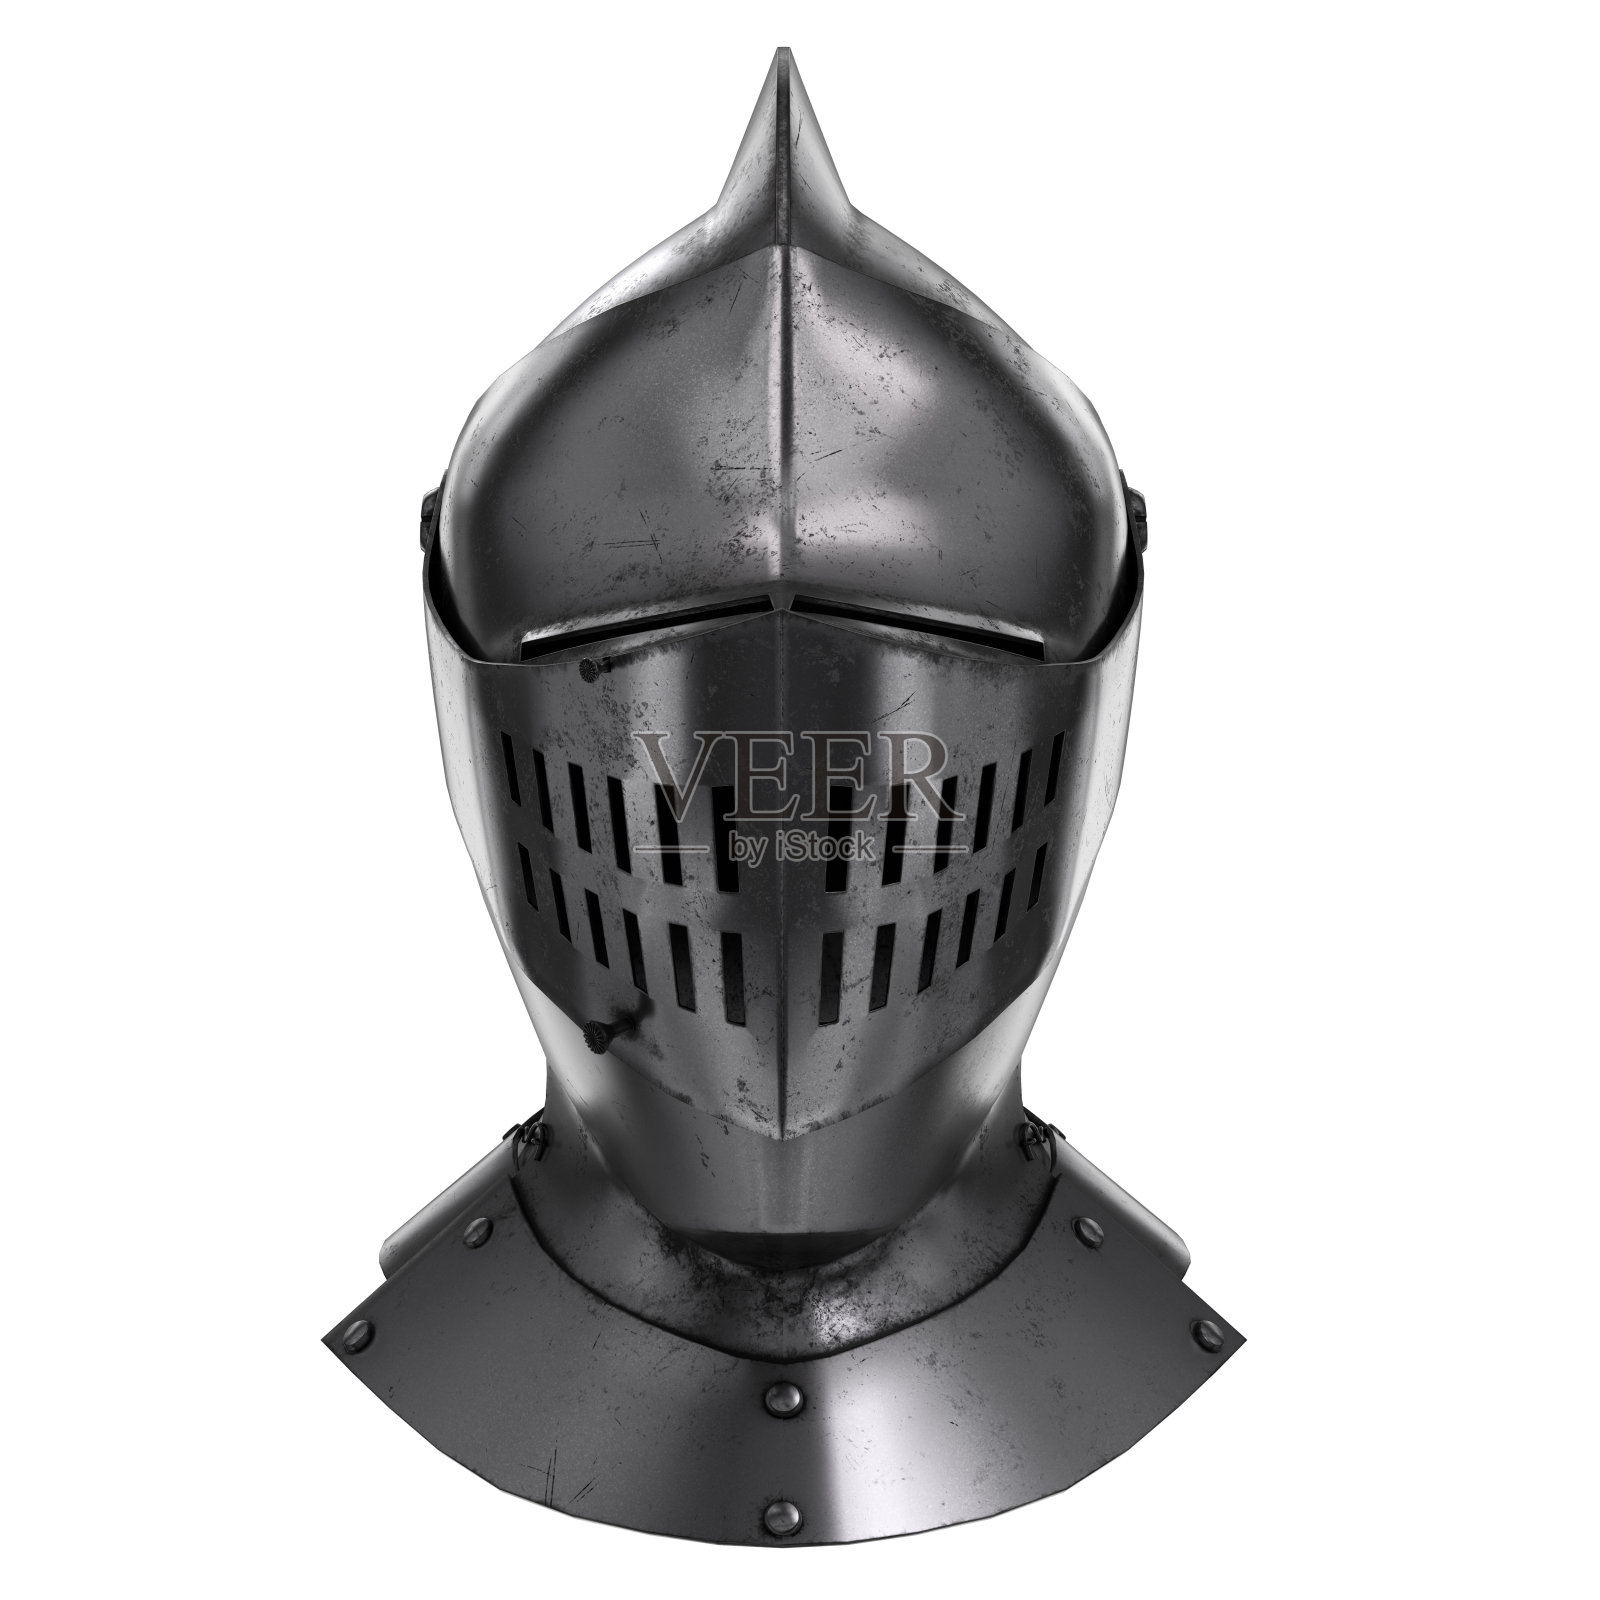 中世纪盔甲骑士的头盔照片摄影图片